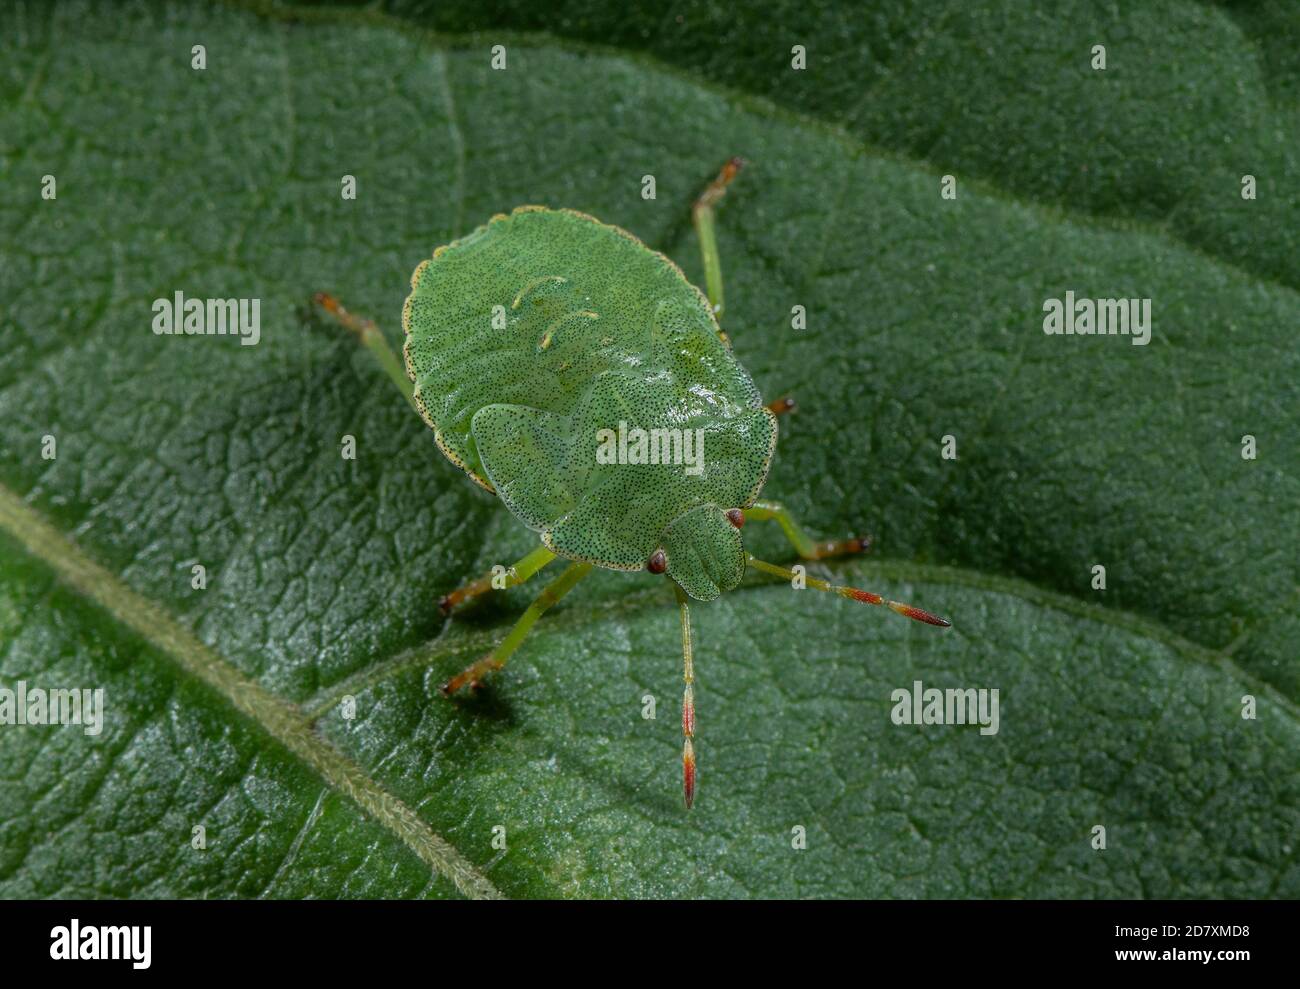 Nymph of Green shieldbug, Palomena prasina, on leaf. Stock Photo